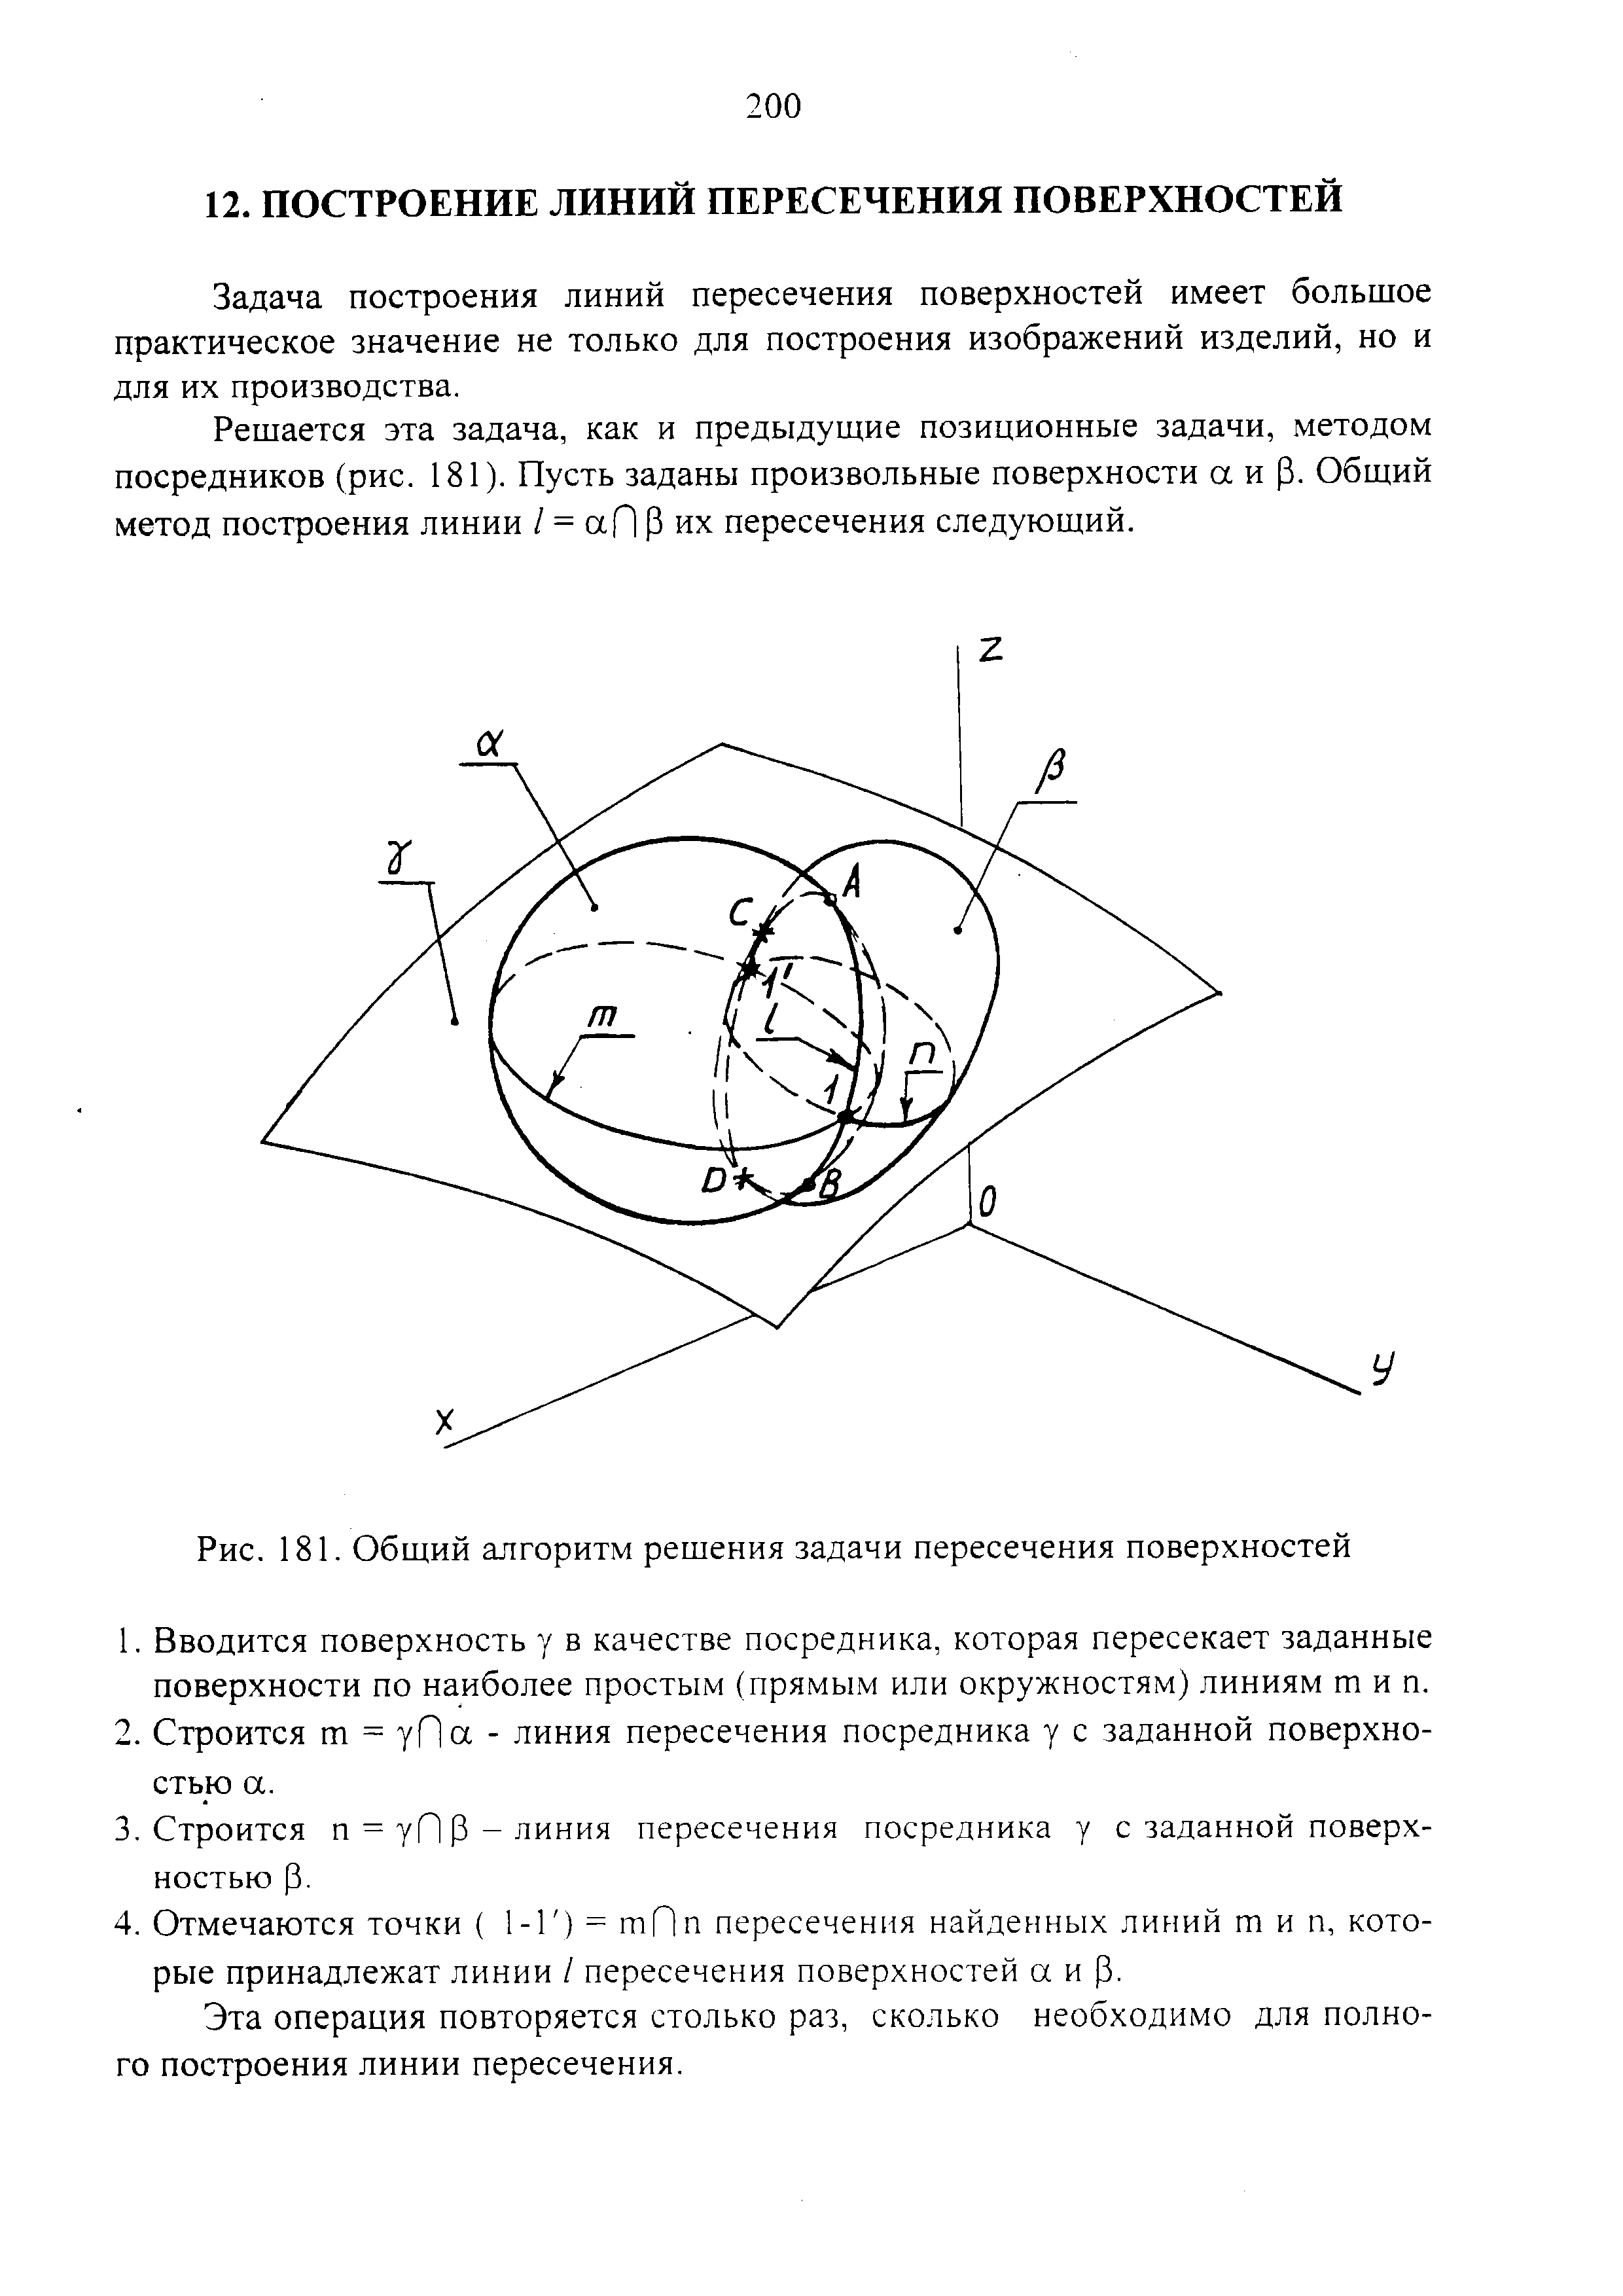 Рис. 181. Общий алгоритм решения задачи пересечения поверхностей
